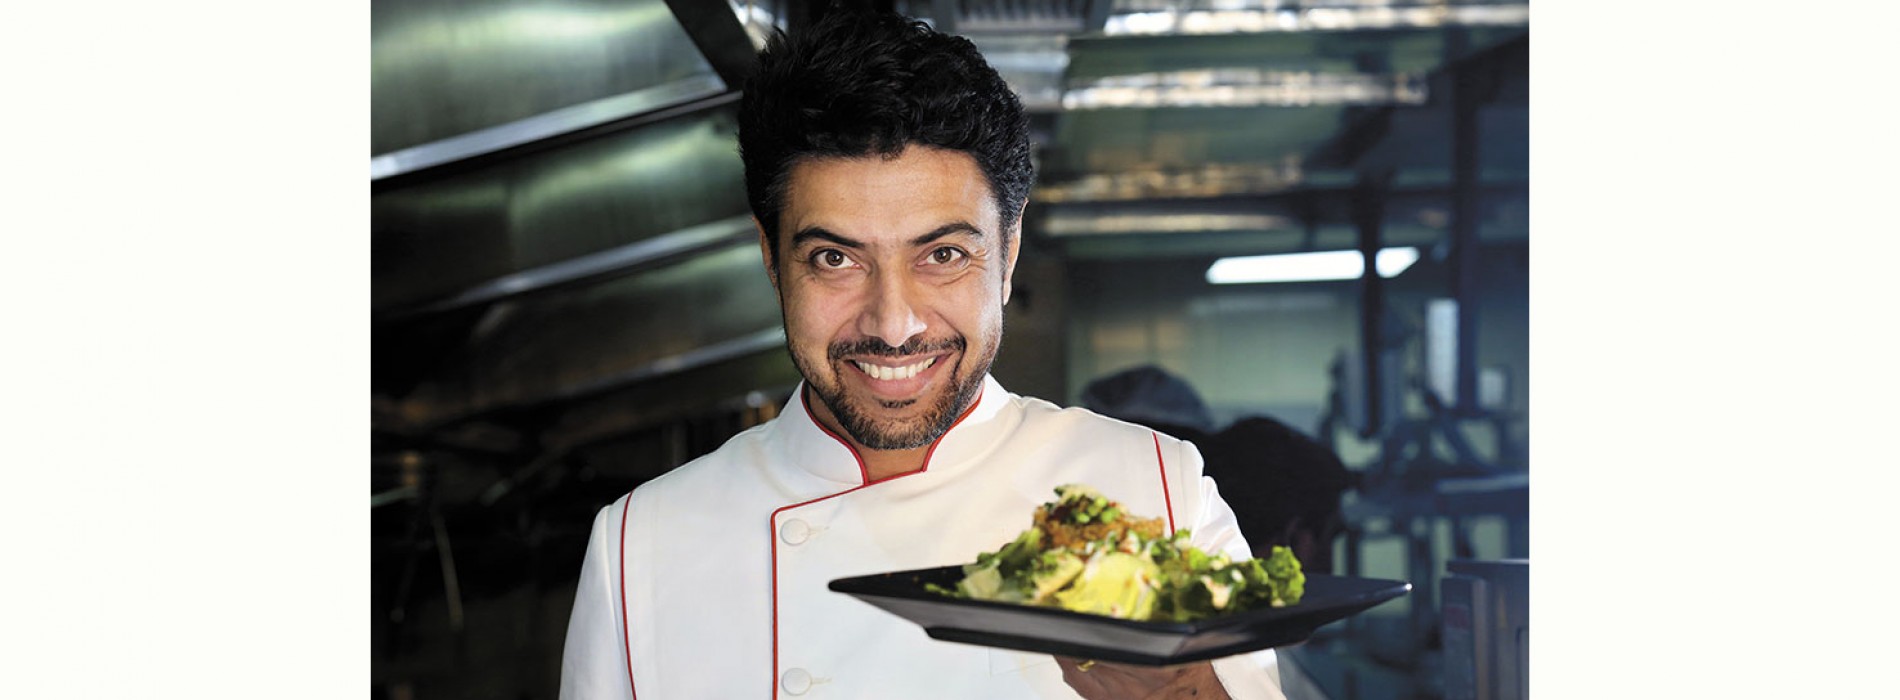 TIRUN brings onboard renowned Indian Chef Ranveer Brar